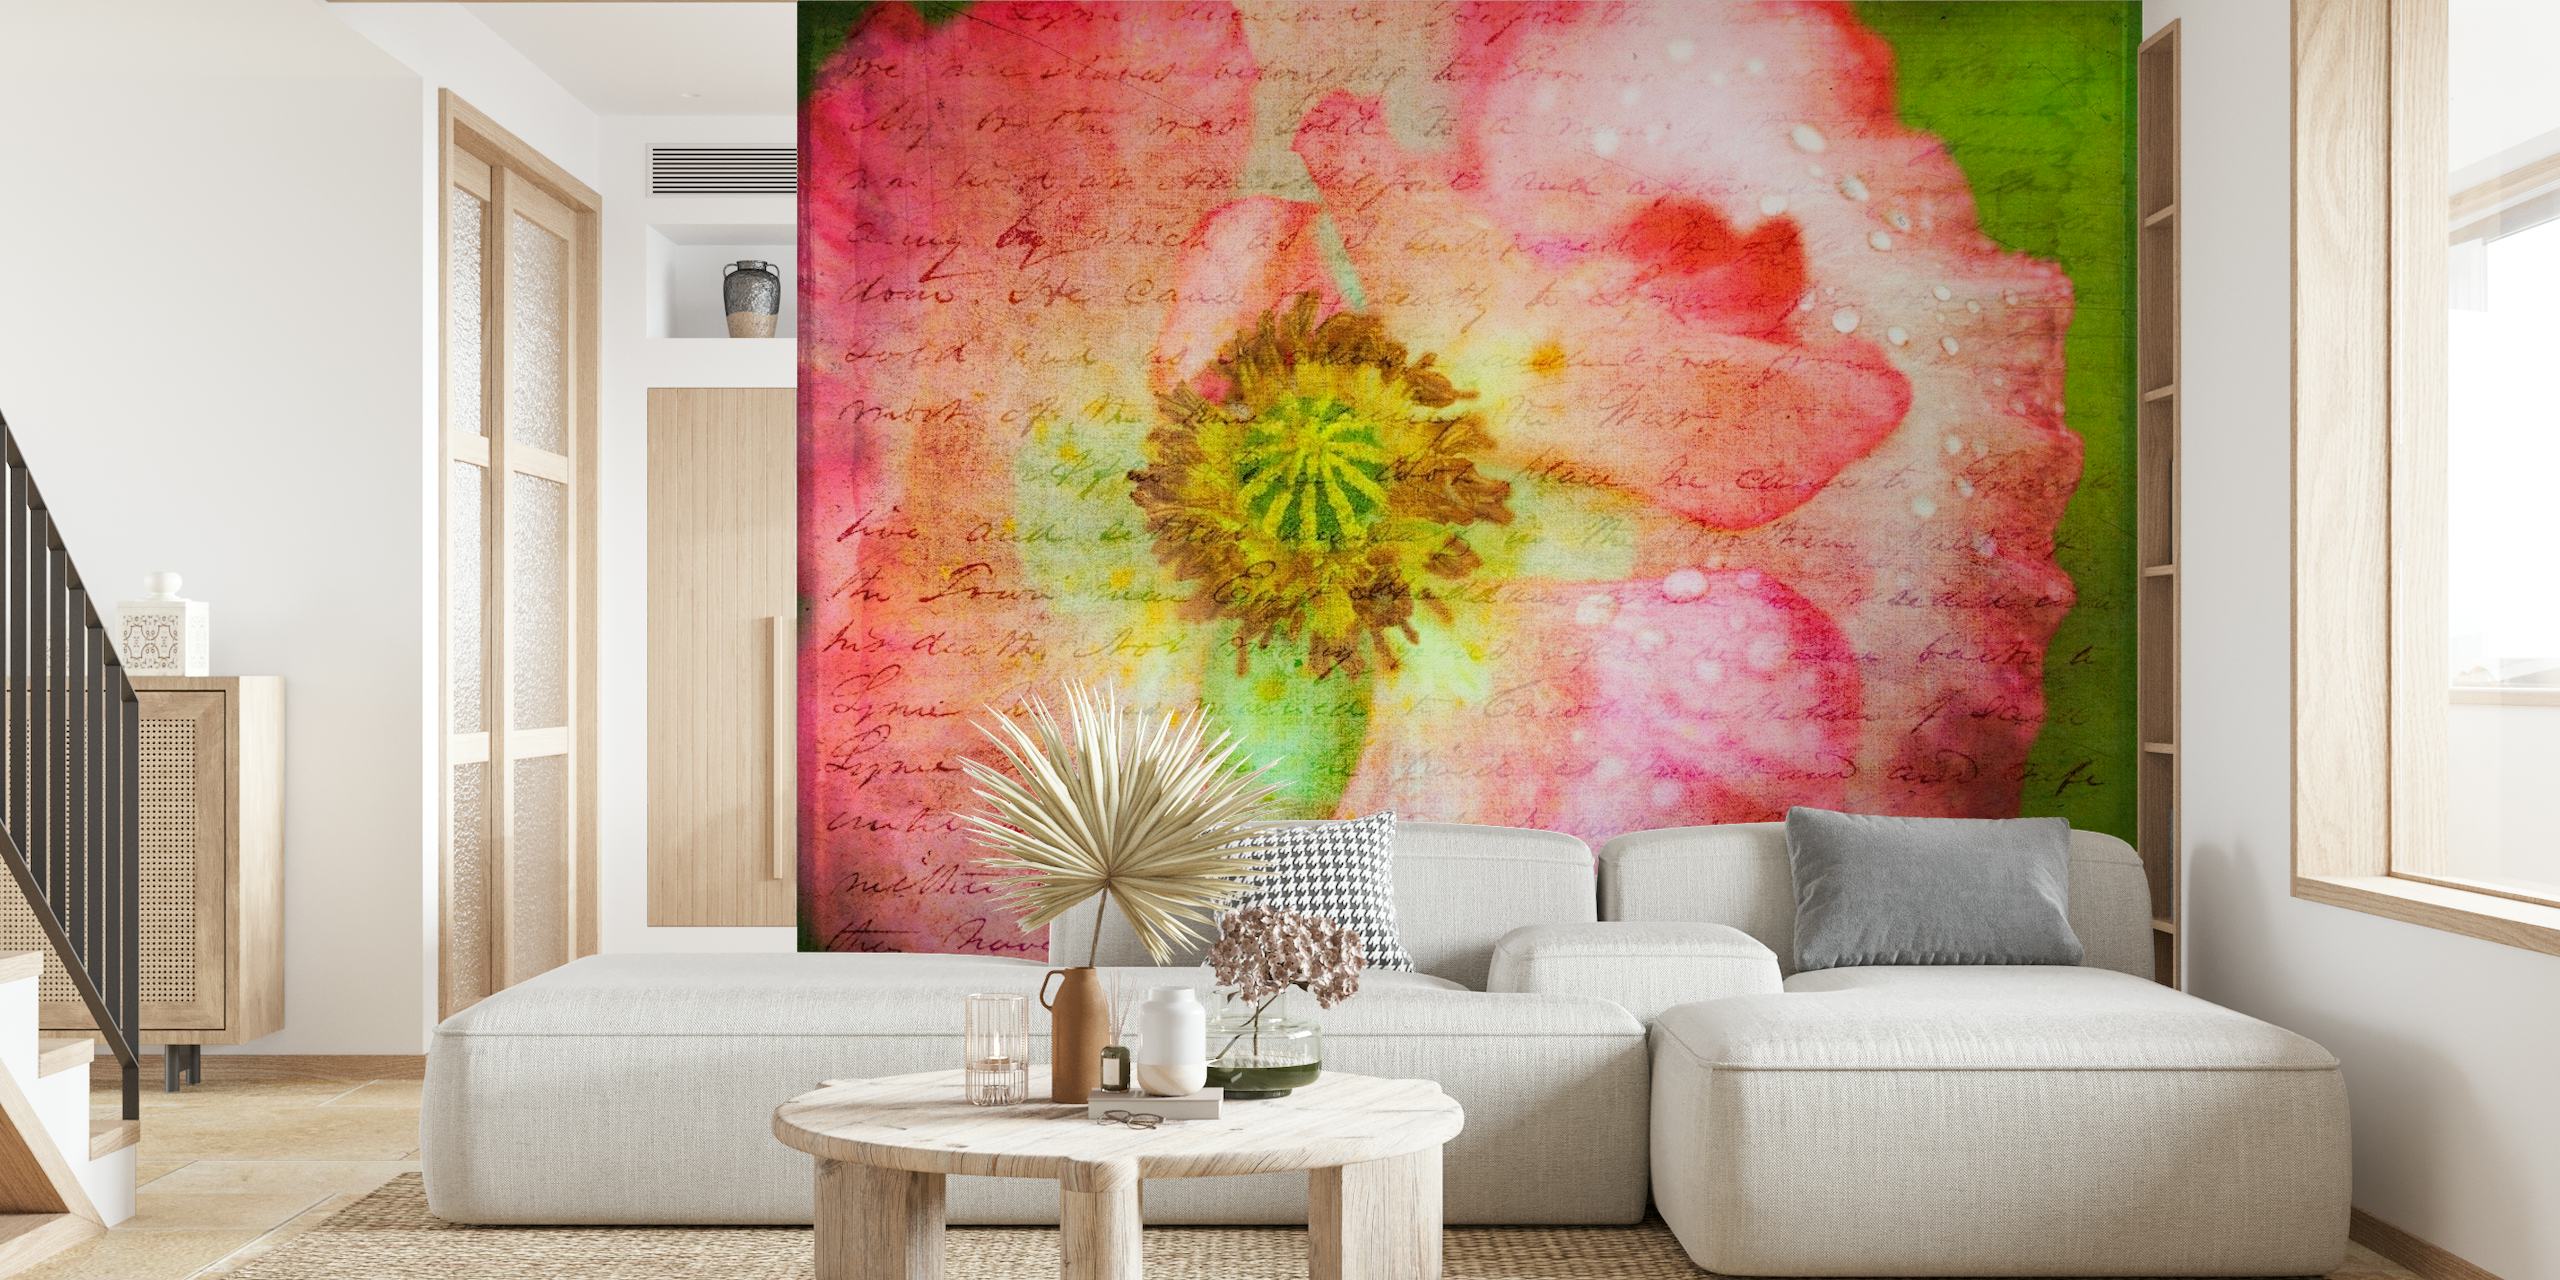 Fototapeta uměleckého ztvárnění růžového květu máku s texturovaným zeleným pozadím